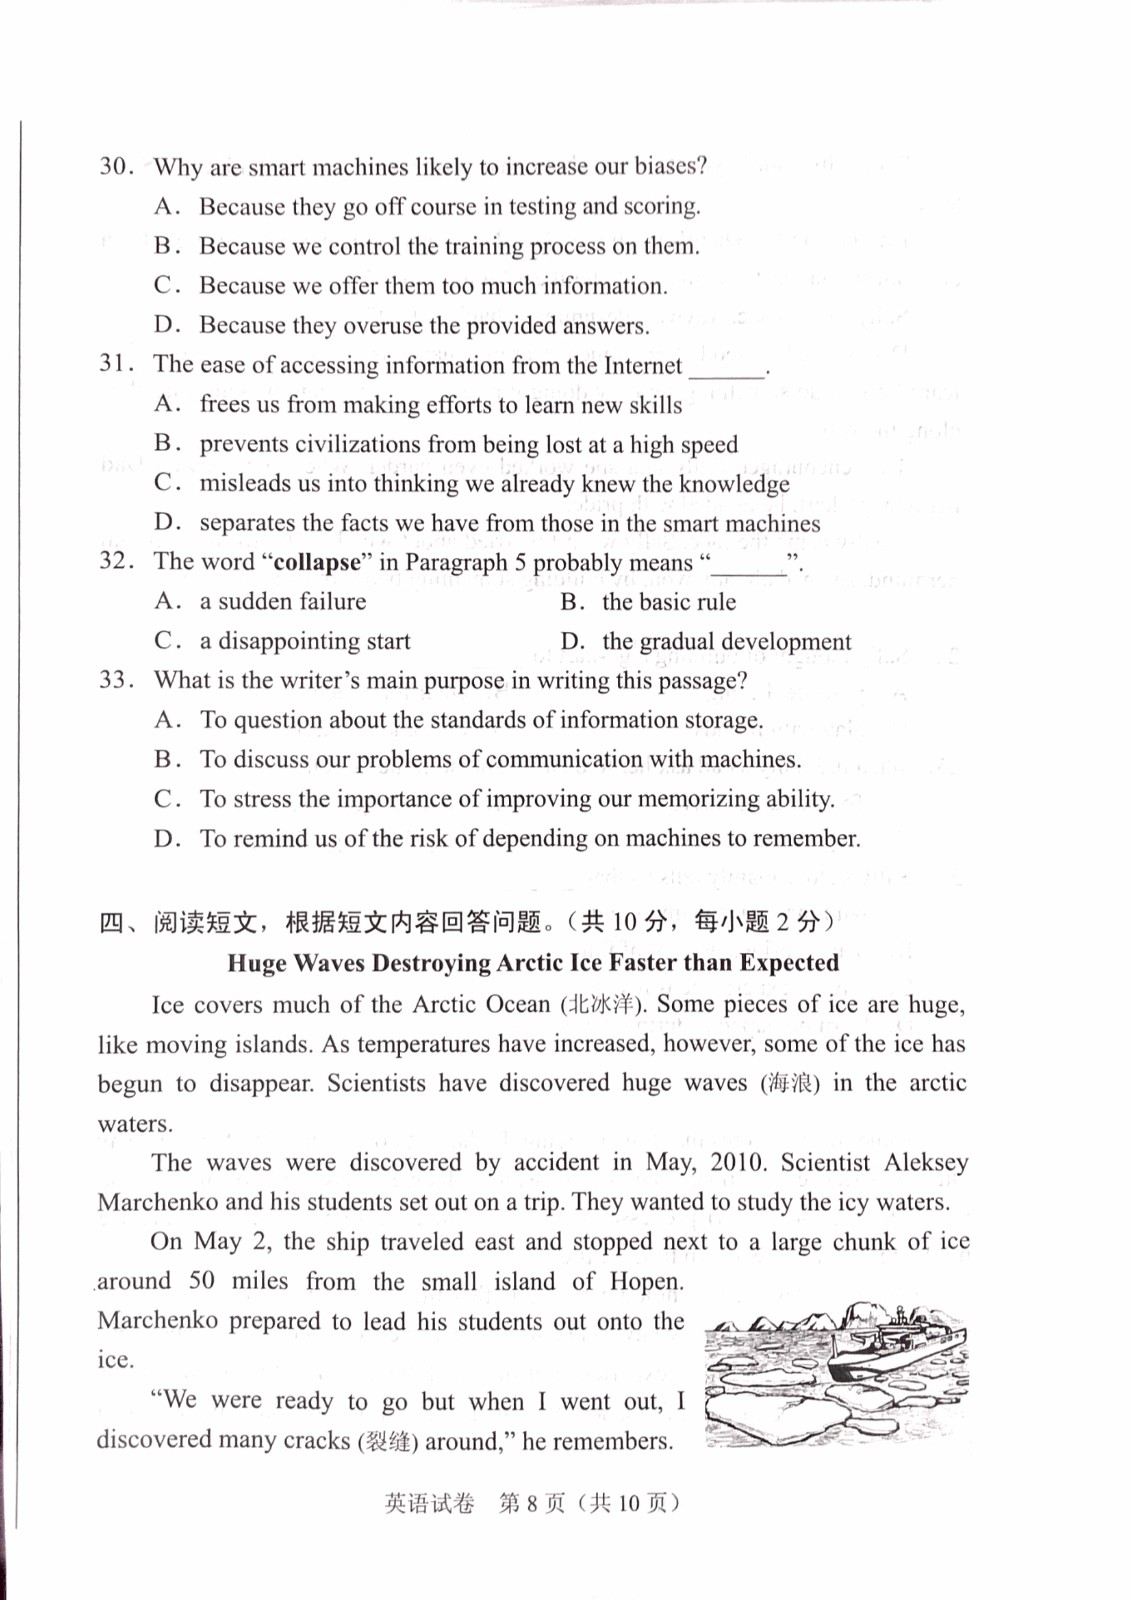 2019年北京中考《英语》真题及答案已公布